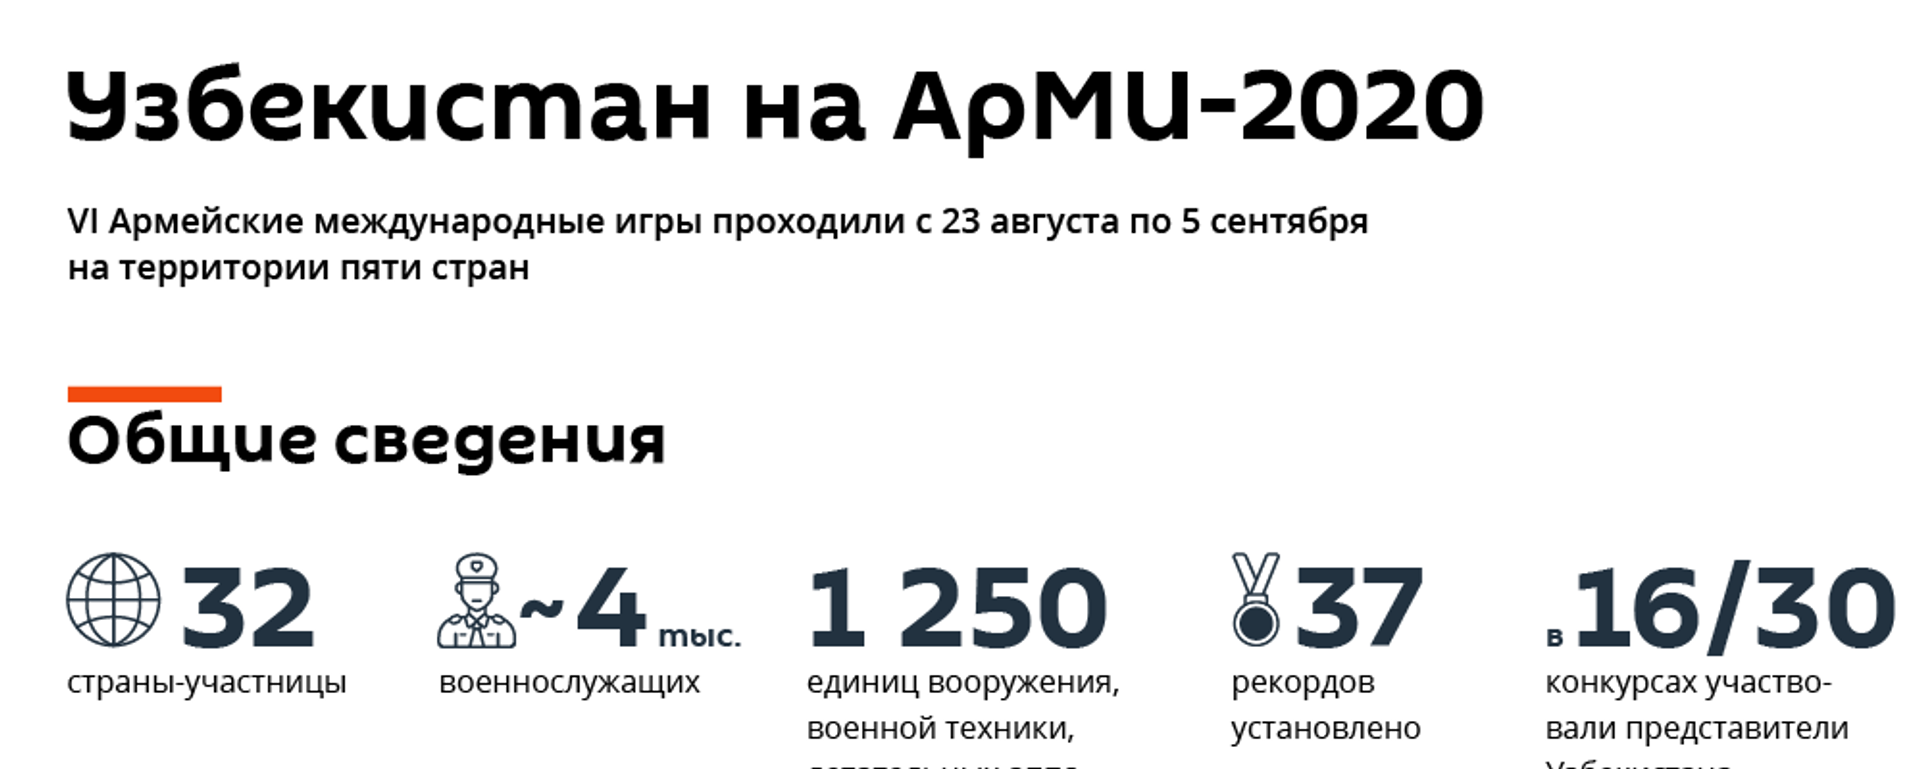 Итоги АрМИ-2020 - Sputnik Узбекистан, 1920, 09.09.2020